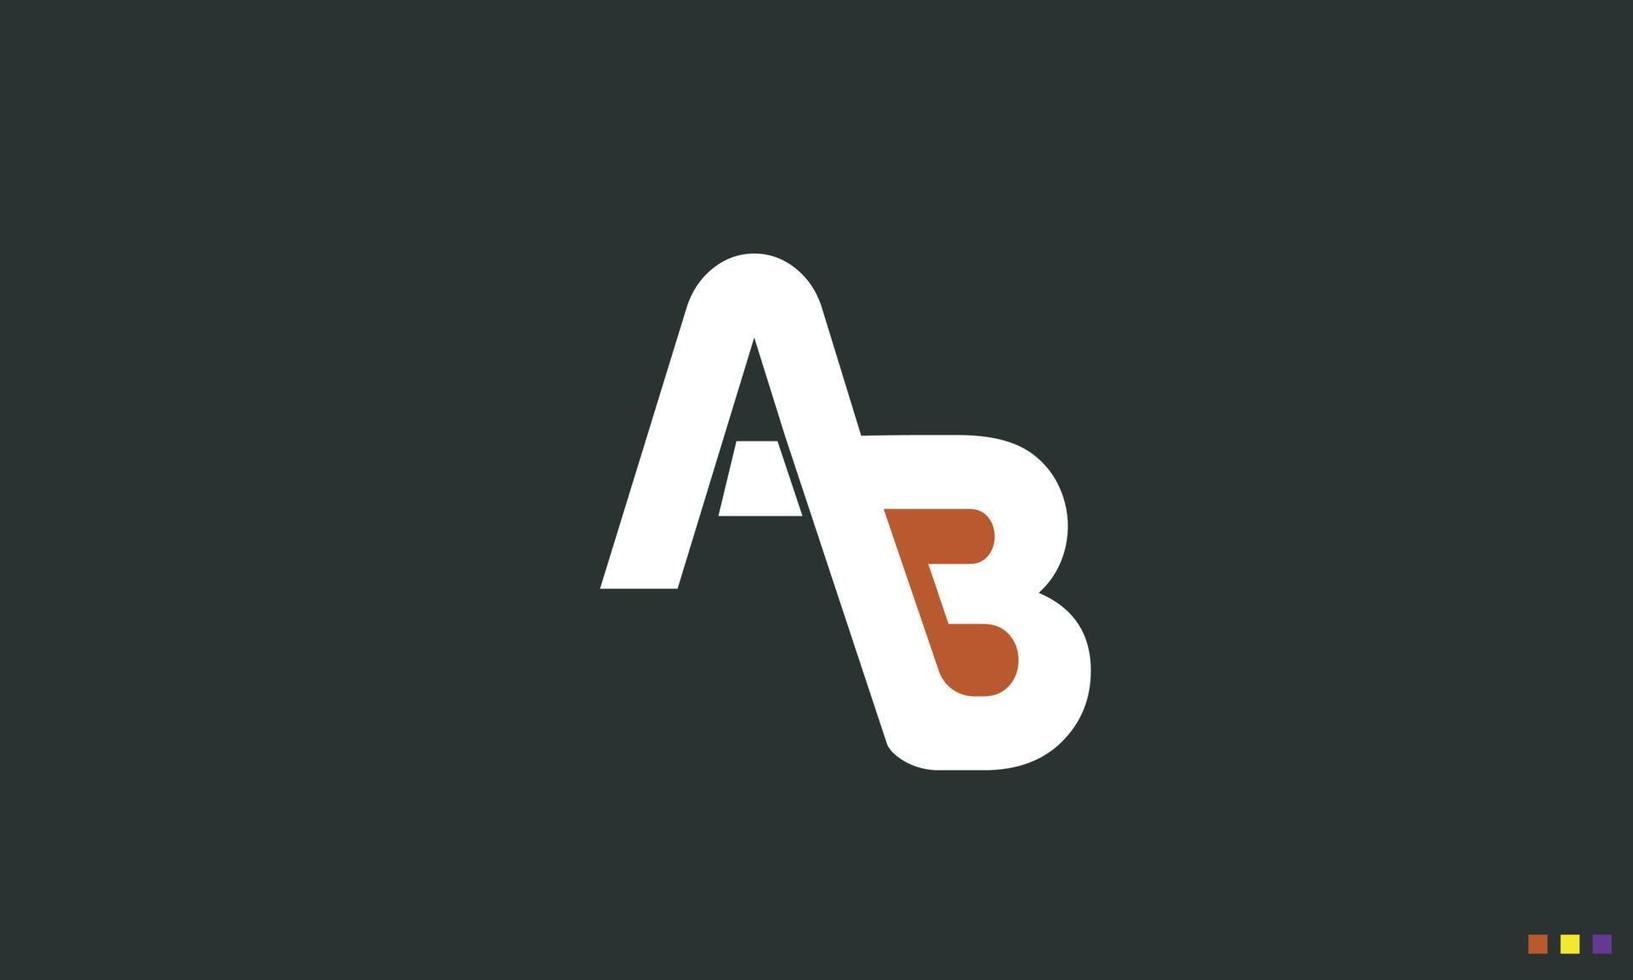 letras do alfabeto iniciais monograma logotipo ab, ba, a e b vetor